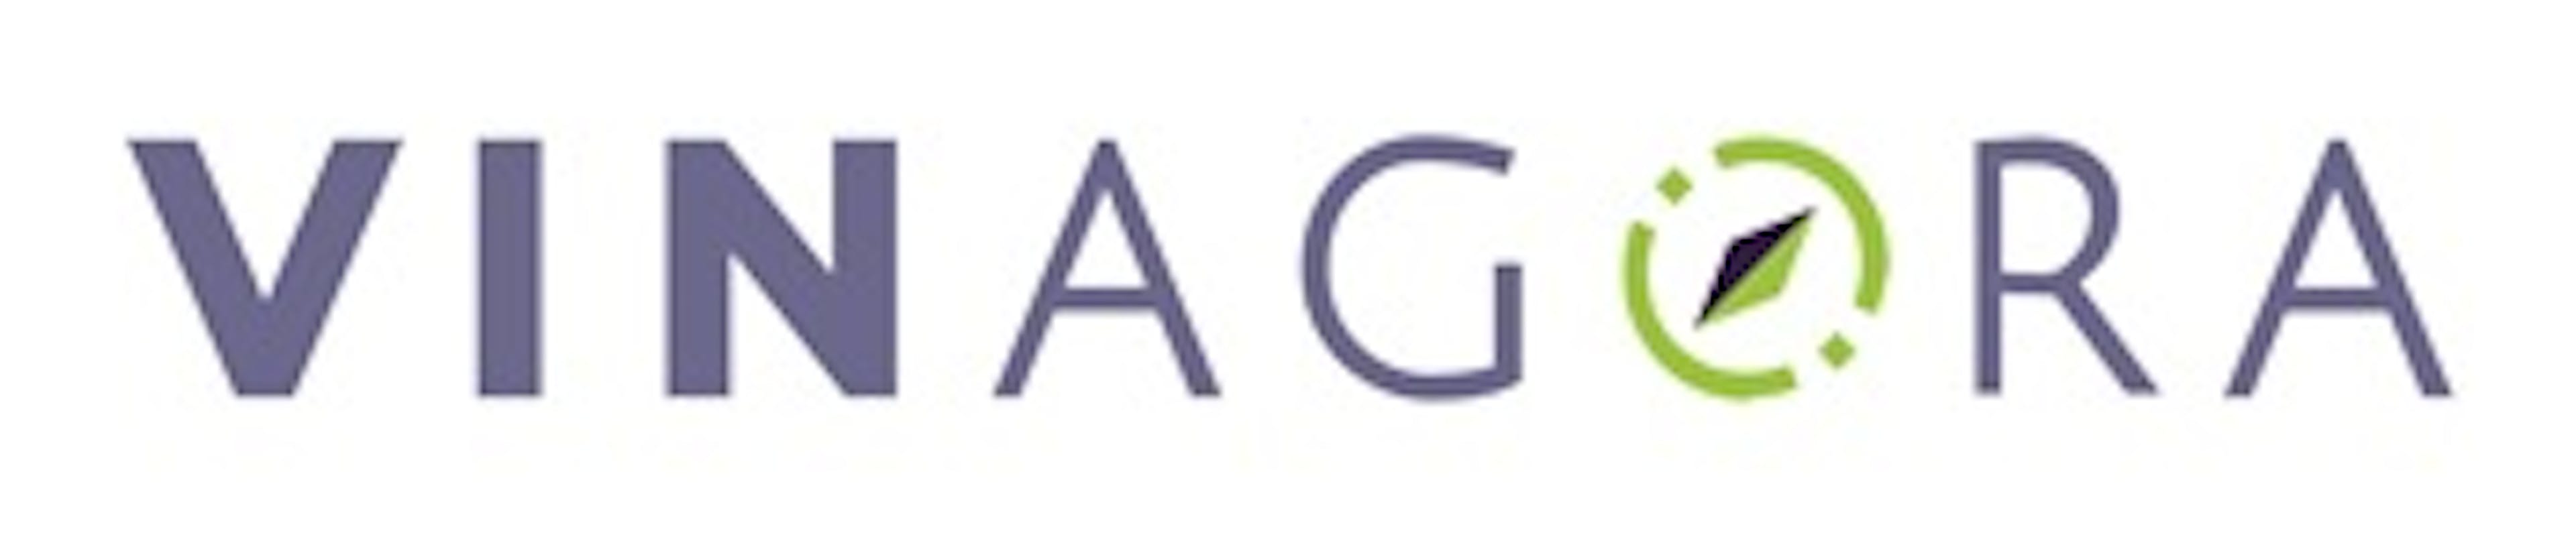 Vinagora logo